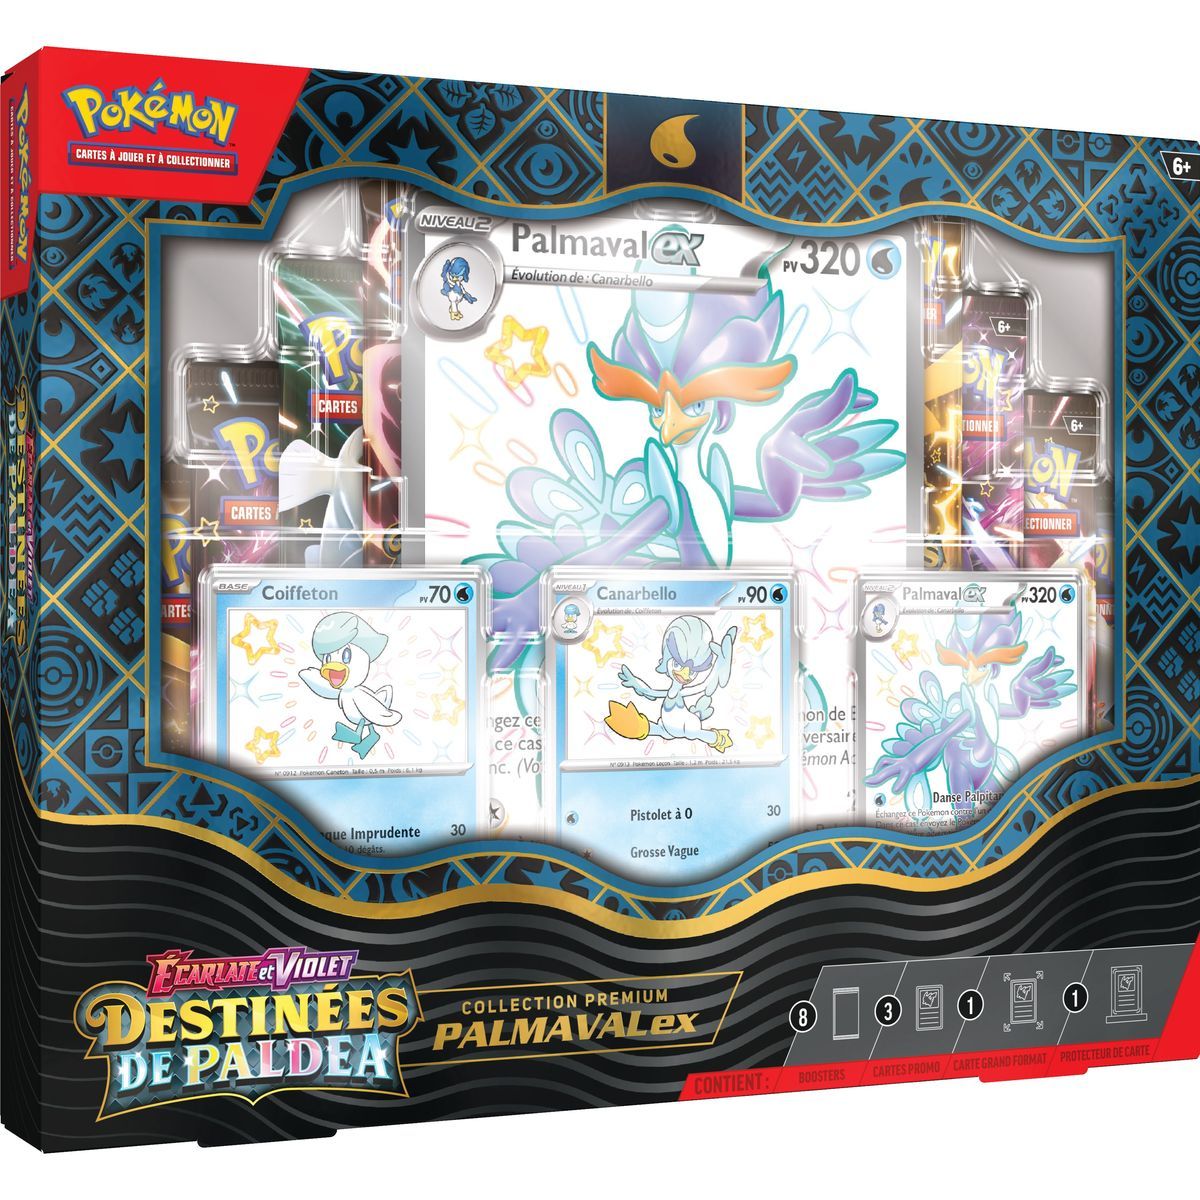 Pokémon - Coffret Collection Écarlate et Violet : Destinées de Paldea Palmaval-EX -[SV04.5 - EV04.5] - FR